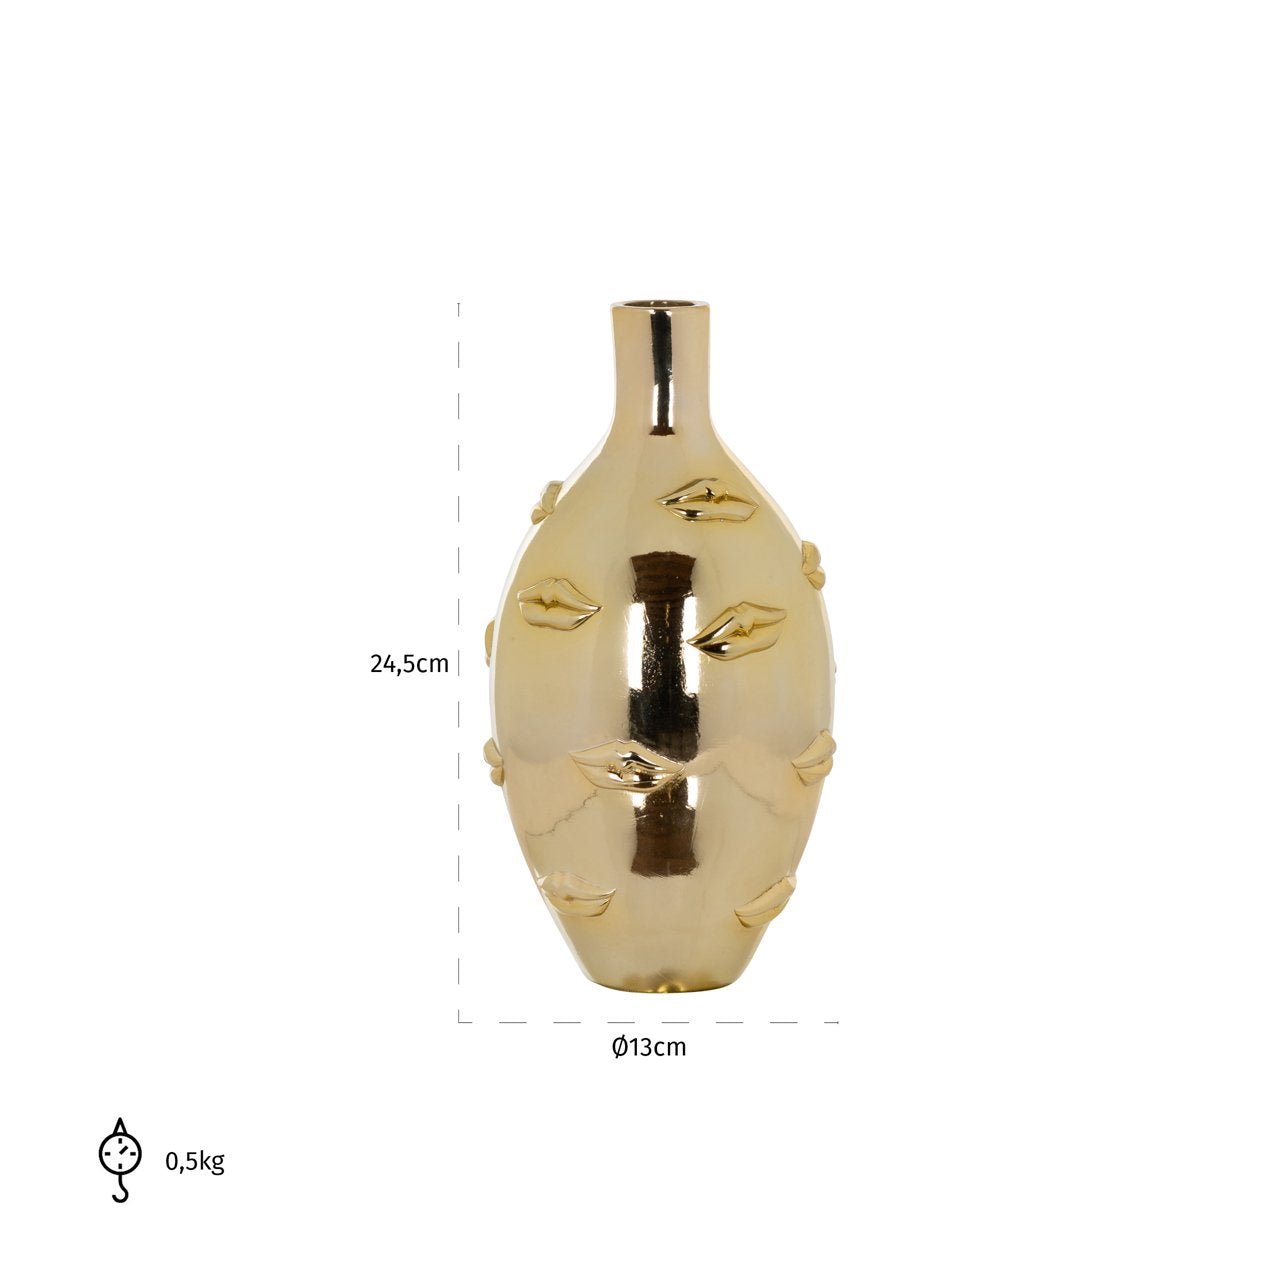 Maataanduiding van de kisses vaas in gouden resin met lippen